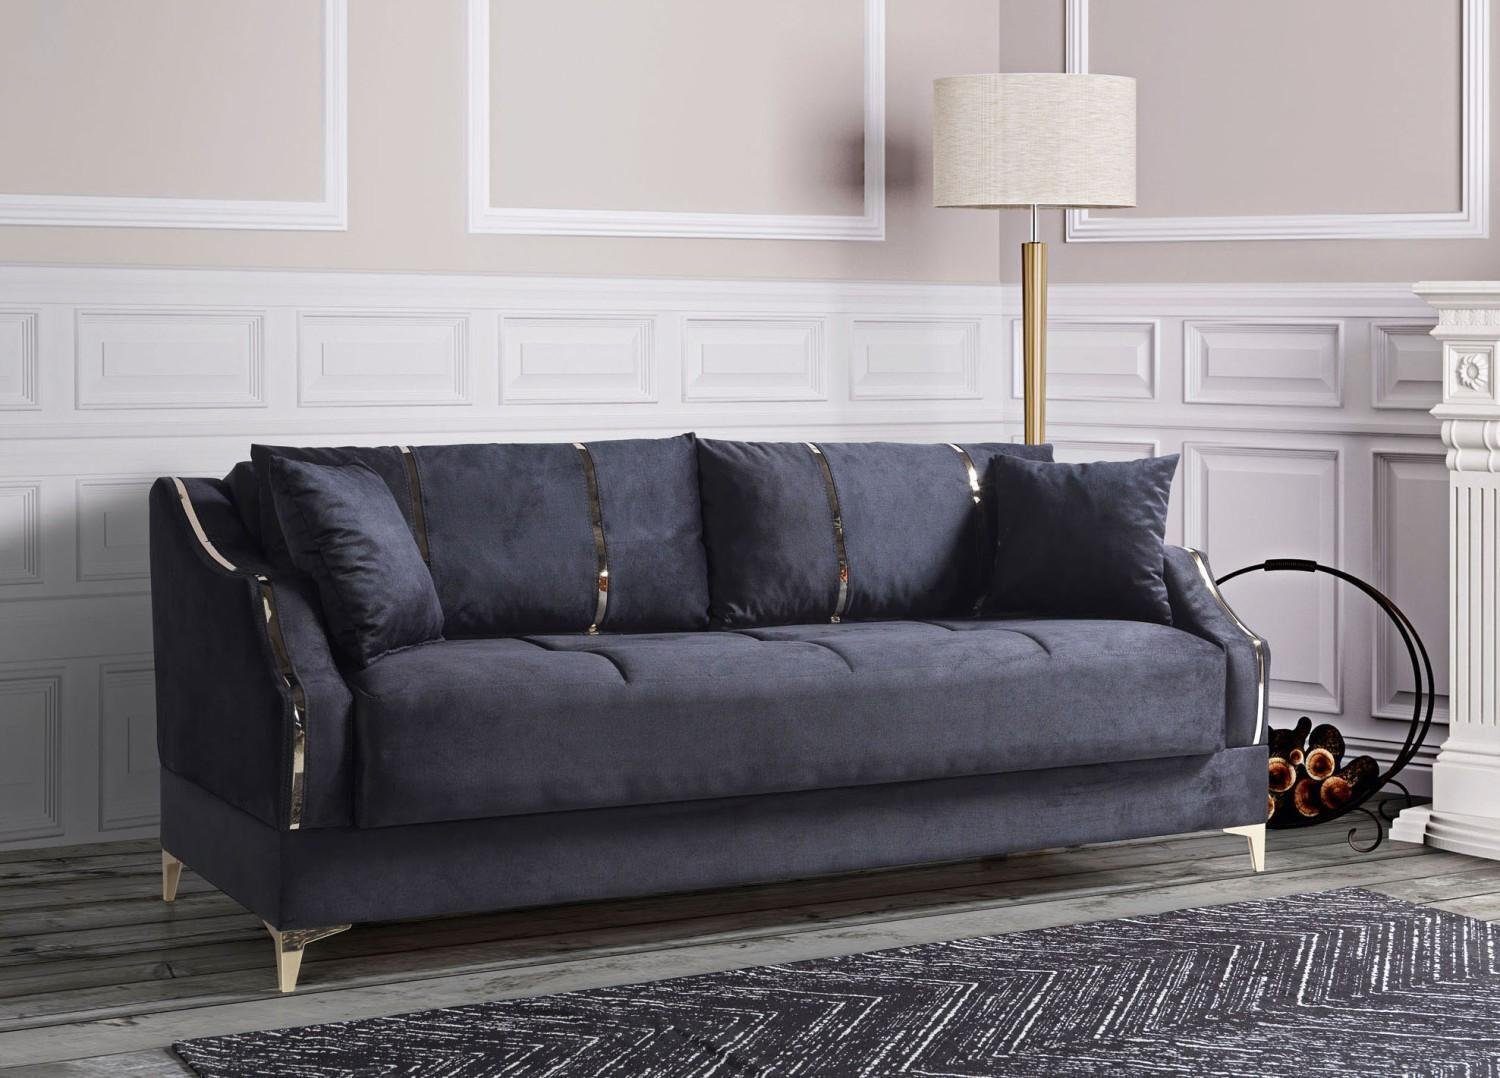 Sehr beliebtes Standardprodukt JVmoebel Sofa Luxus 3 Sitzer Wohnzimmer In Made Sofa Textil Elegant 208cm, Europe Sofa Schwarz Möbel